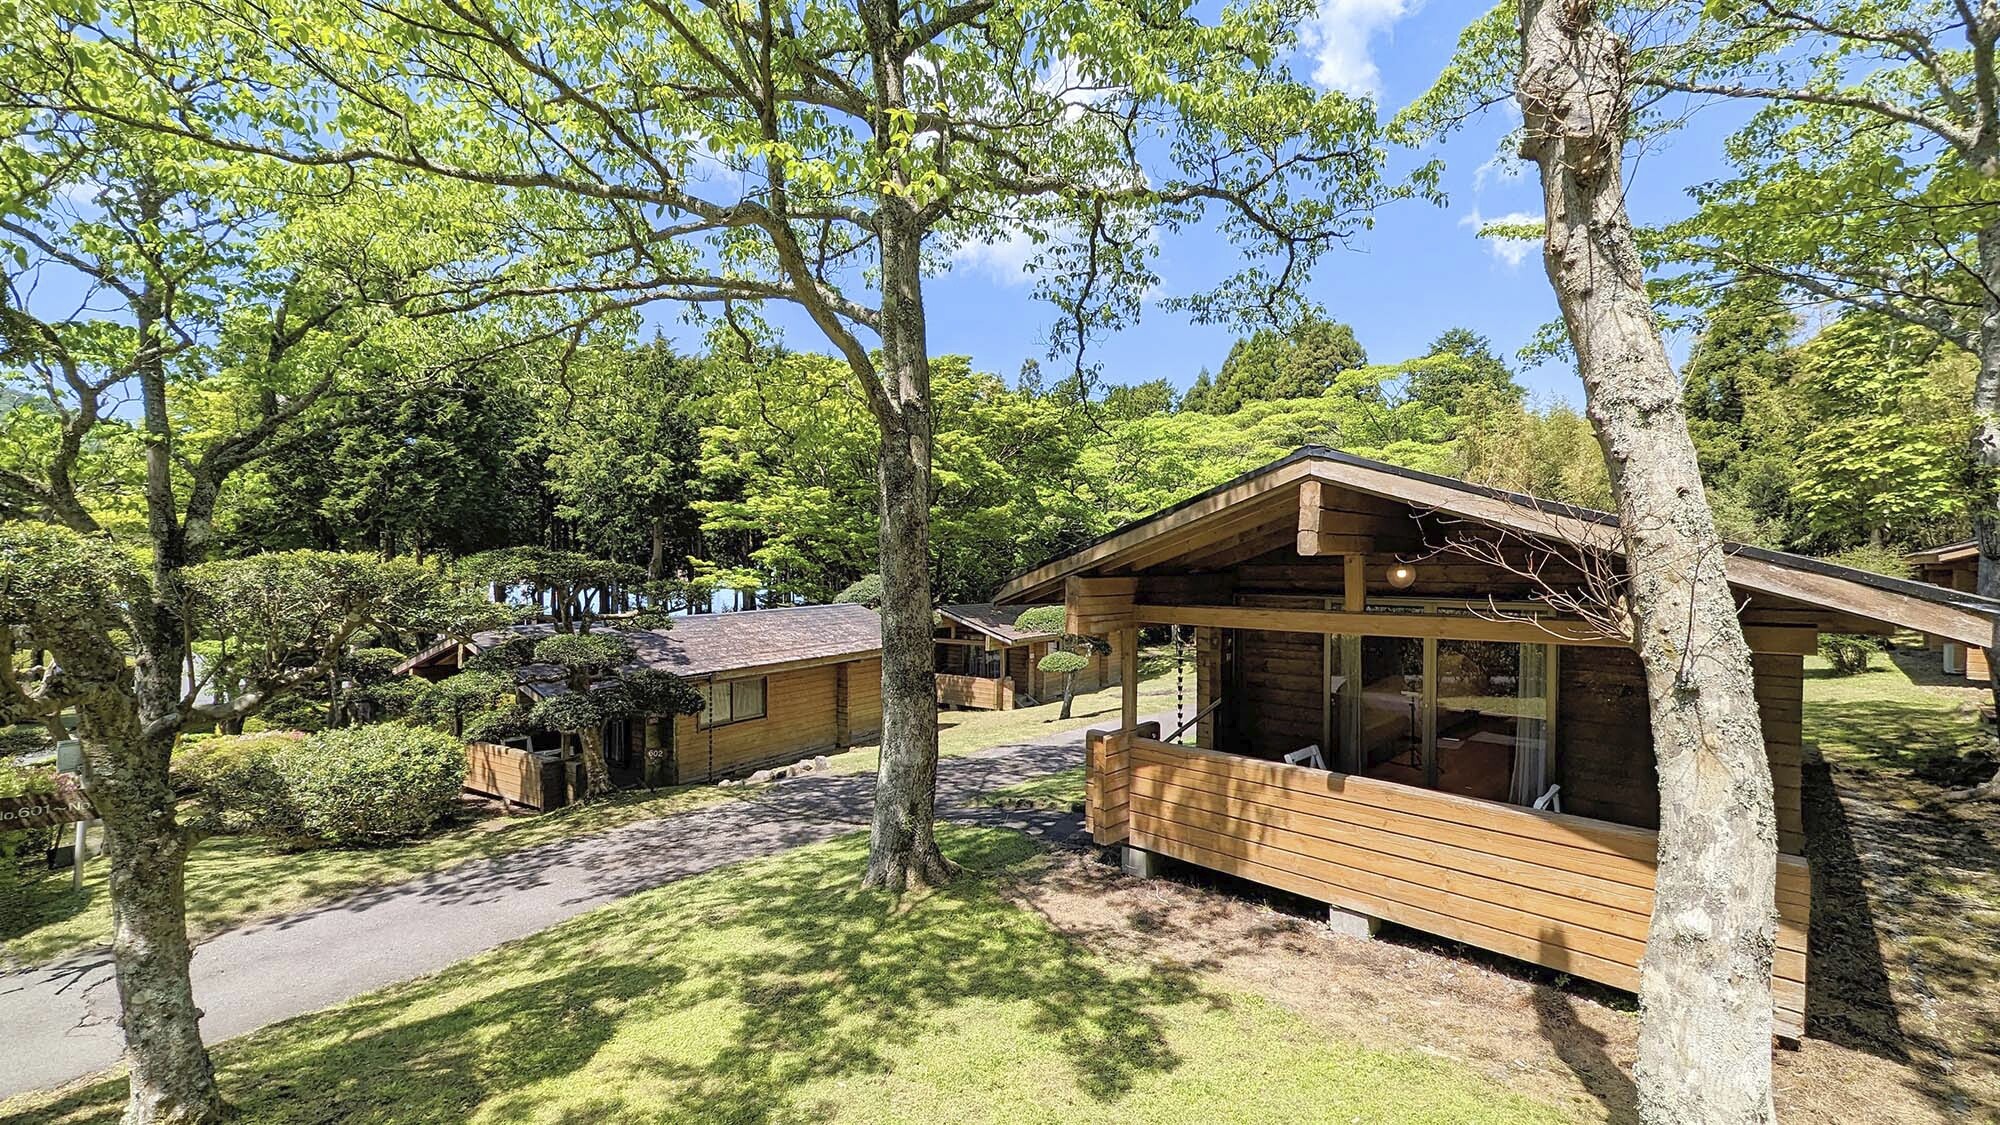 神奈川で家族で泊まれる貸別荘や貸切コテージなど教えてください。